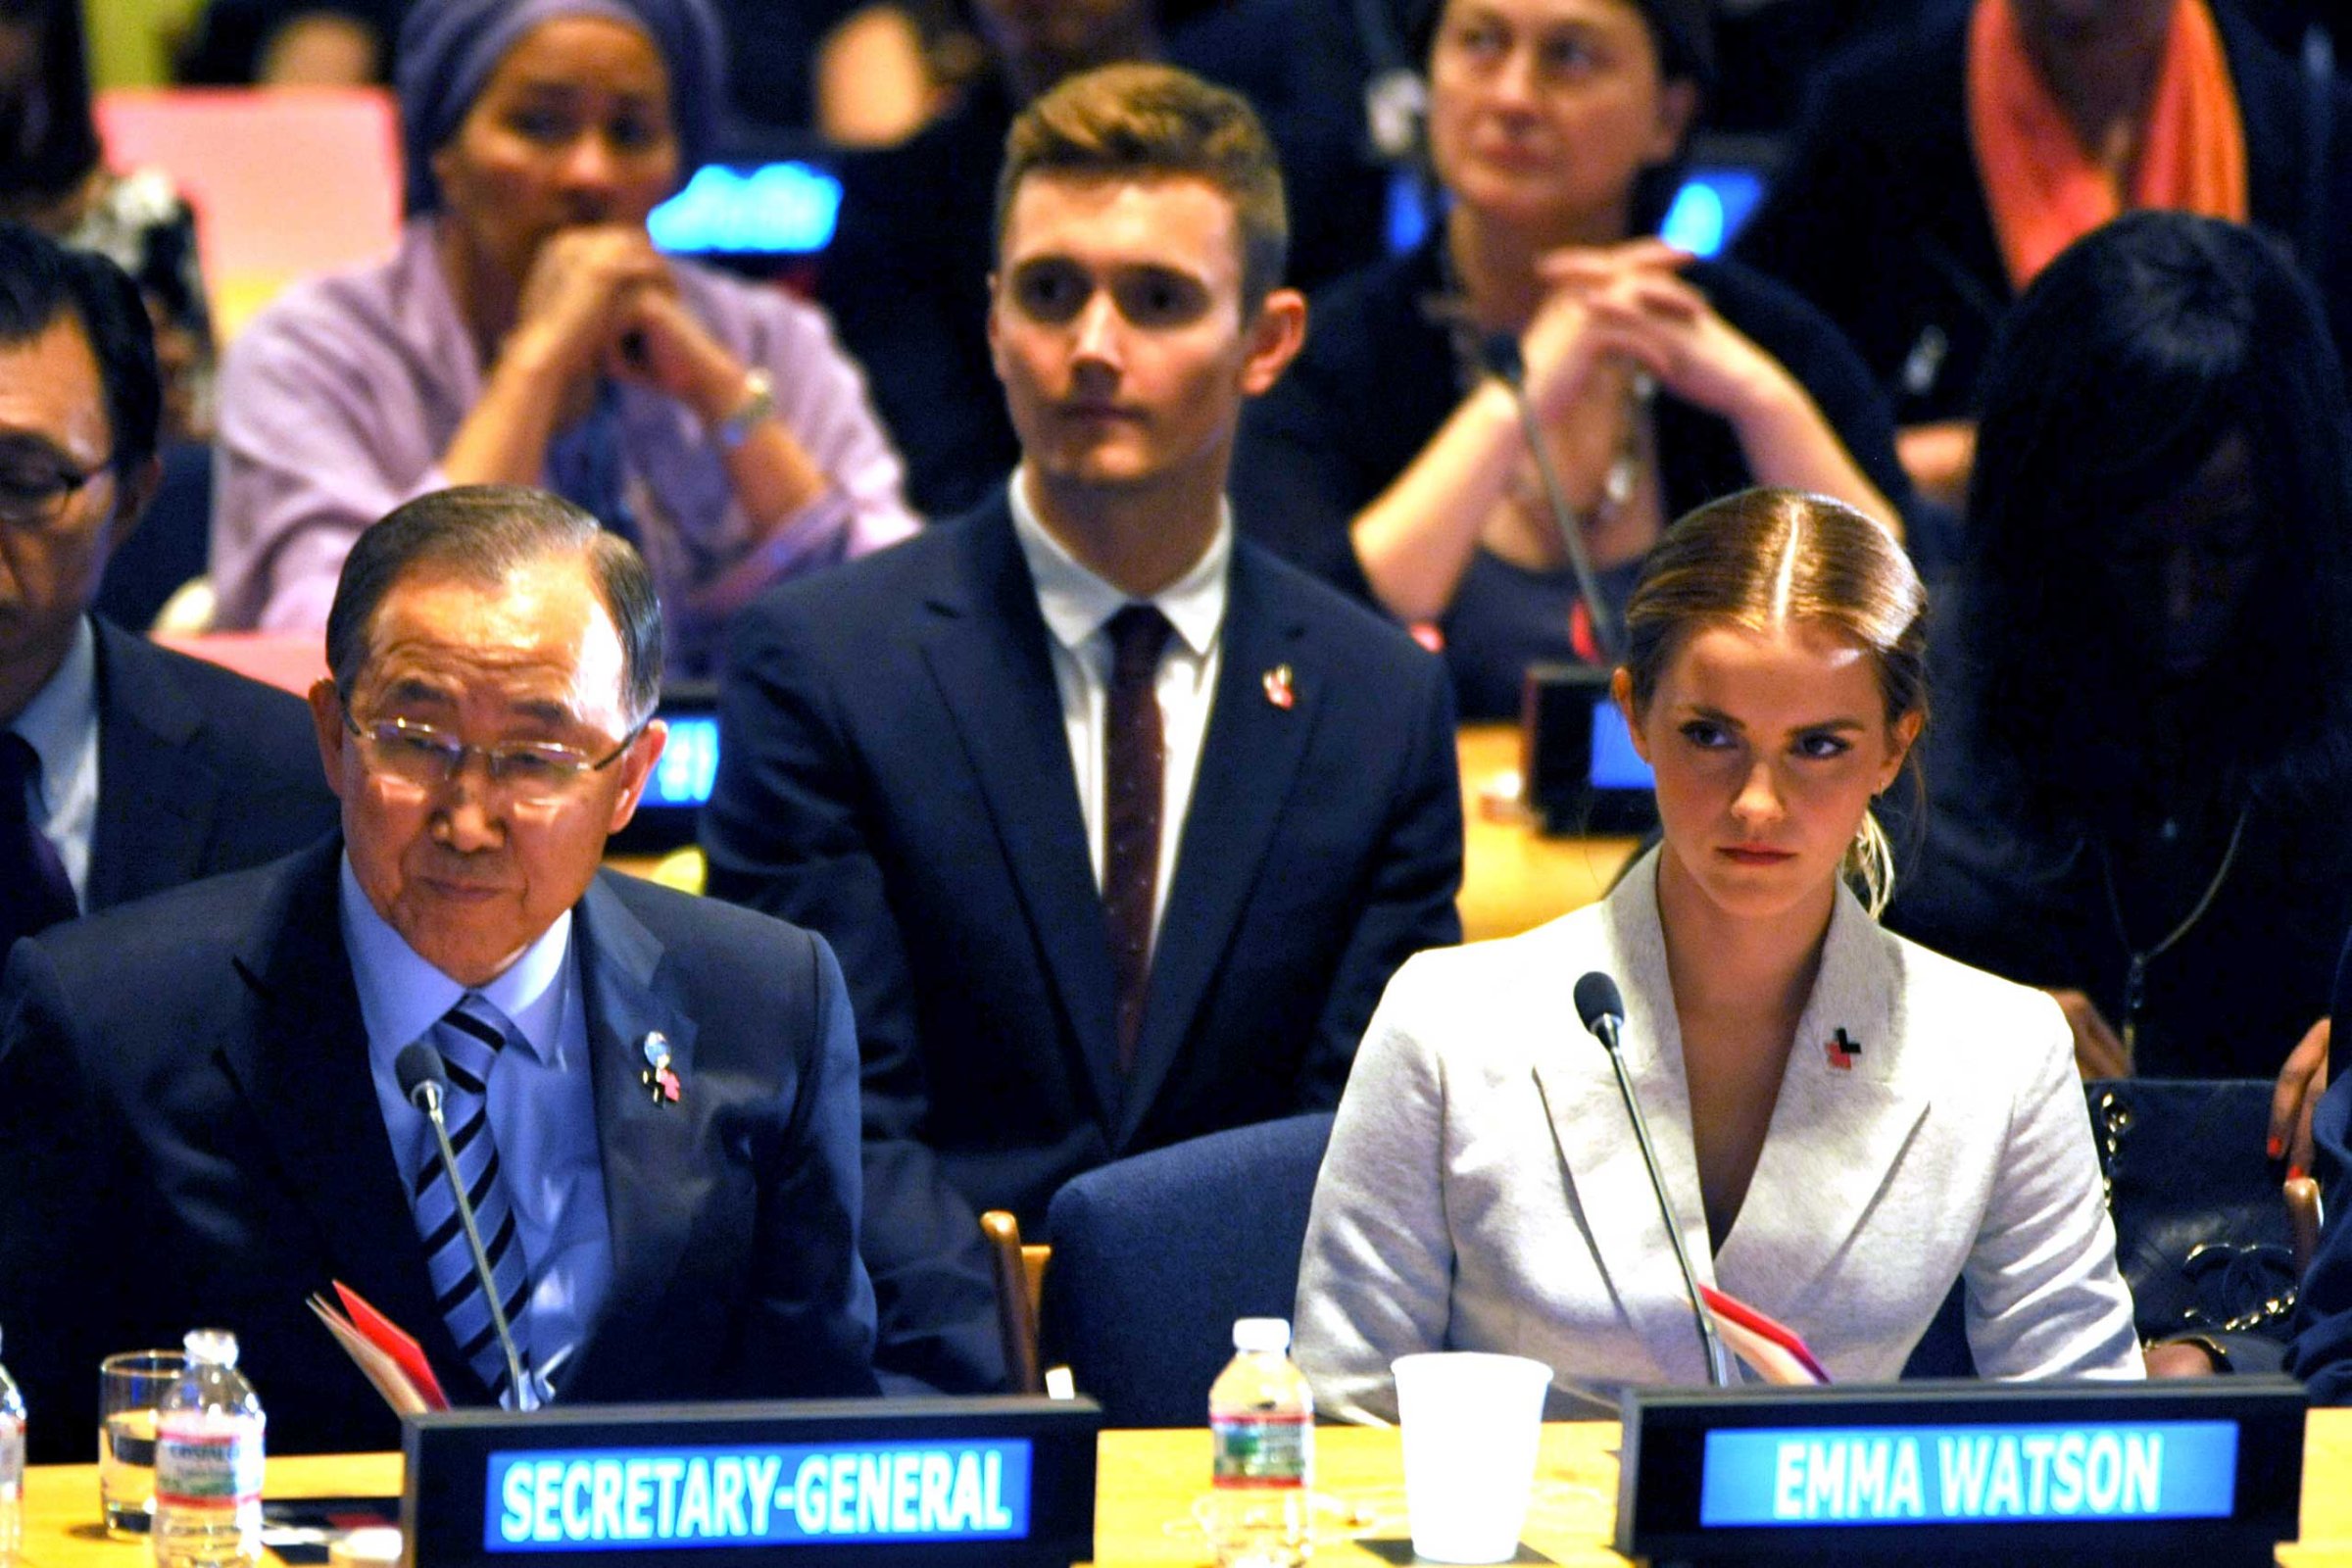 Emma Watson United Nations Speech